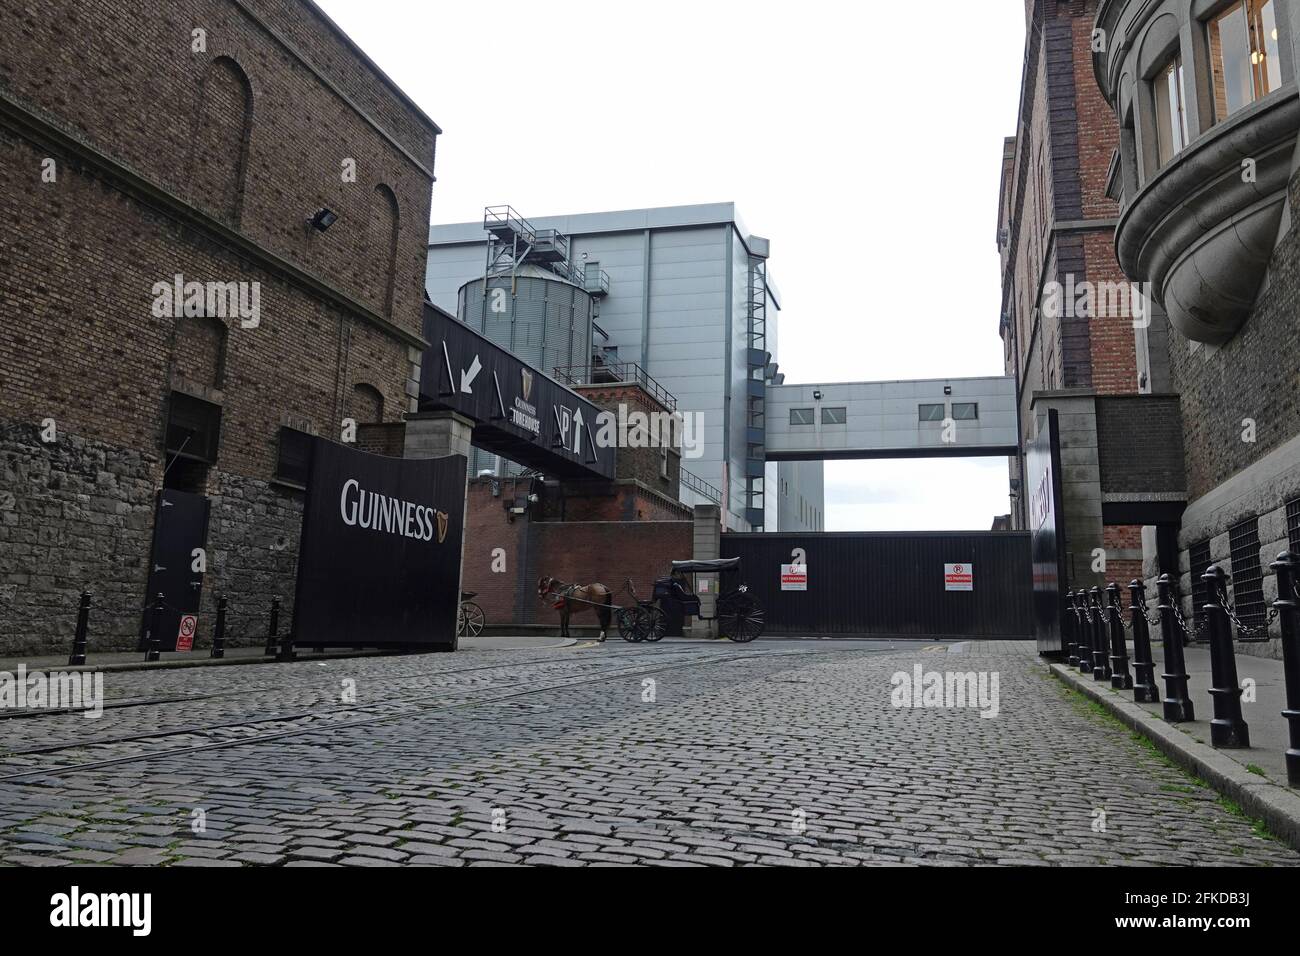 Dublino, Irlanda - 1 giugno 2019: Il cancello della Guinness Storehouse è mostrato con un cavallo e una carrozza nelle vicinanze. Solo per usi editoriali. Foto Stock